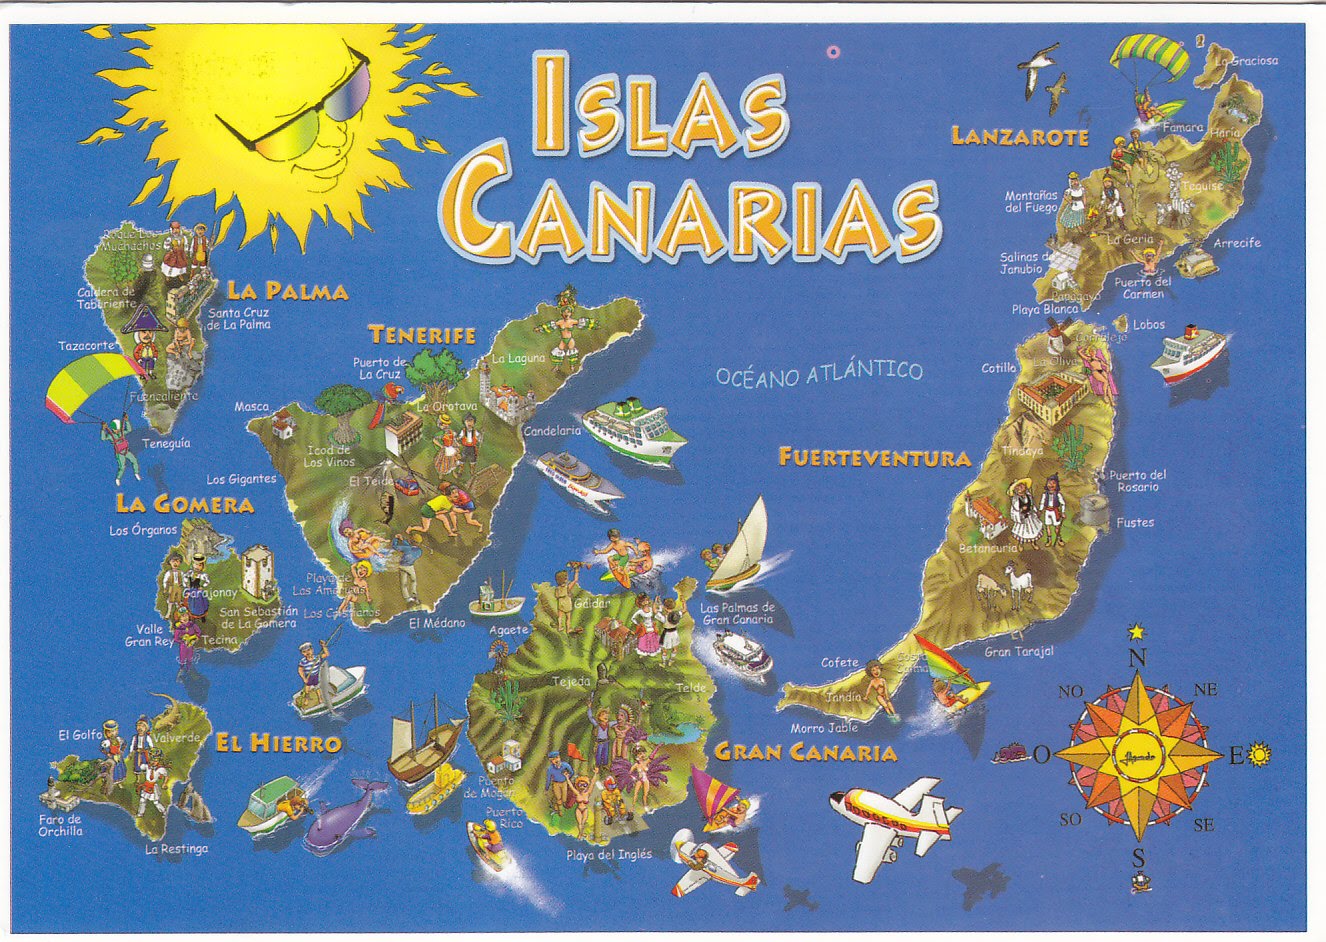 Islas Canarias [1971]